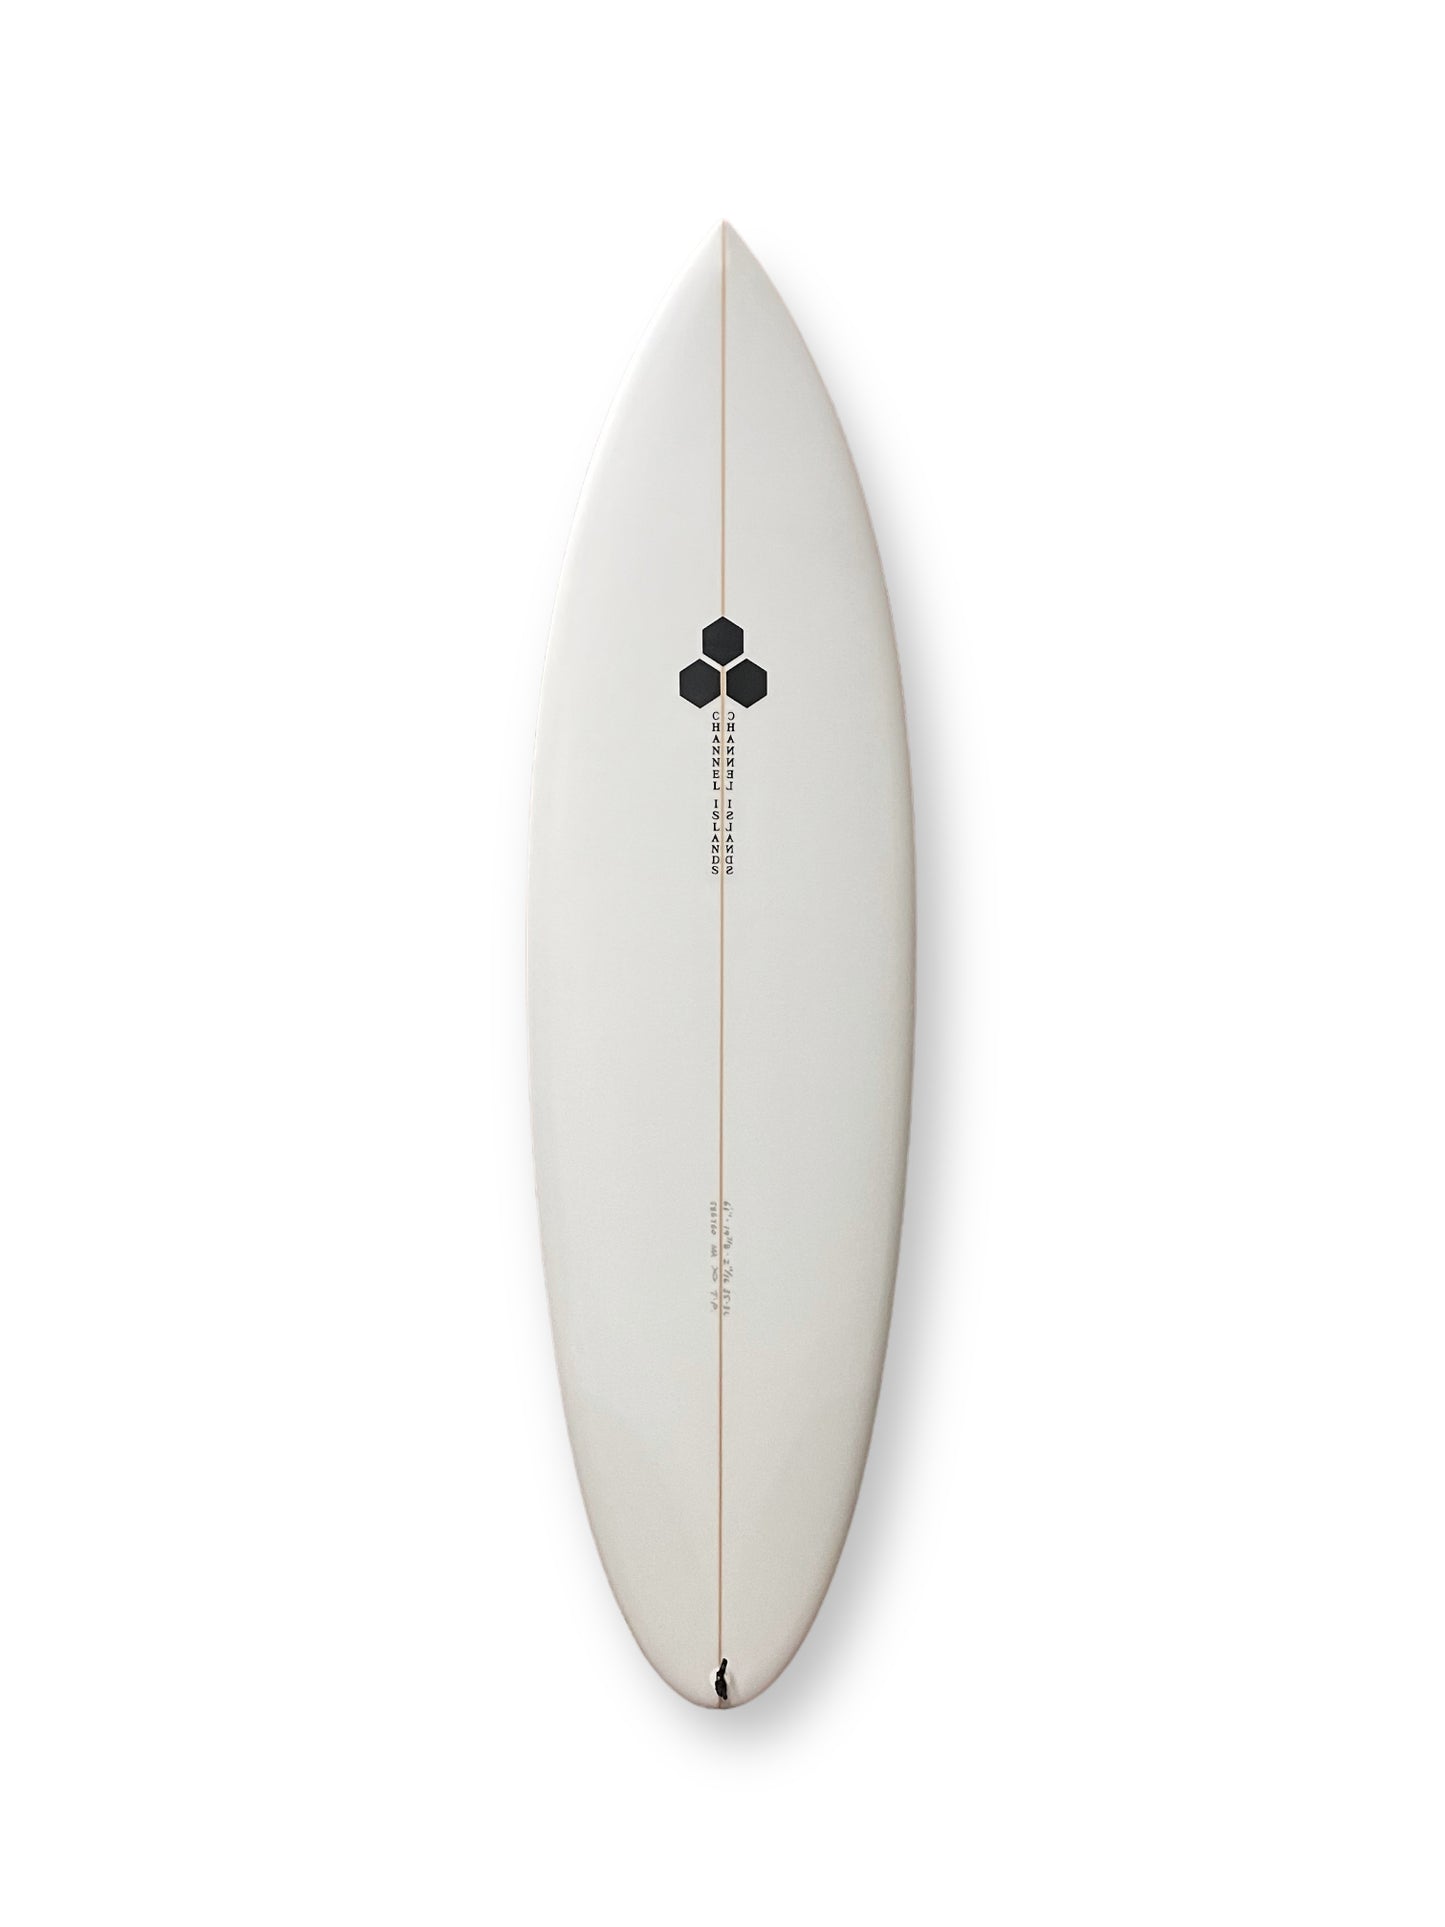 CHANNEL ISLANDS TWIN PIN 5'11" SURFBOARD